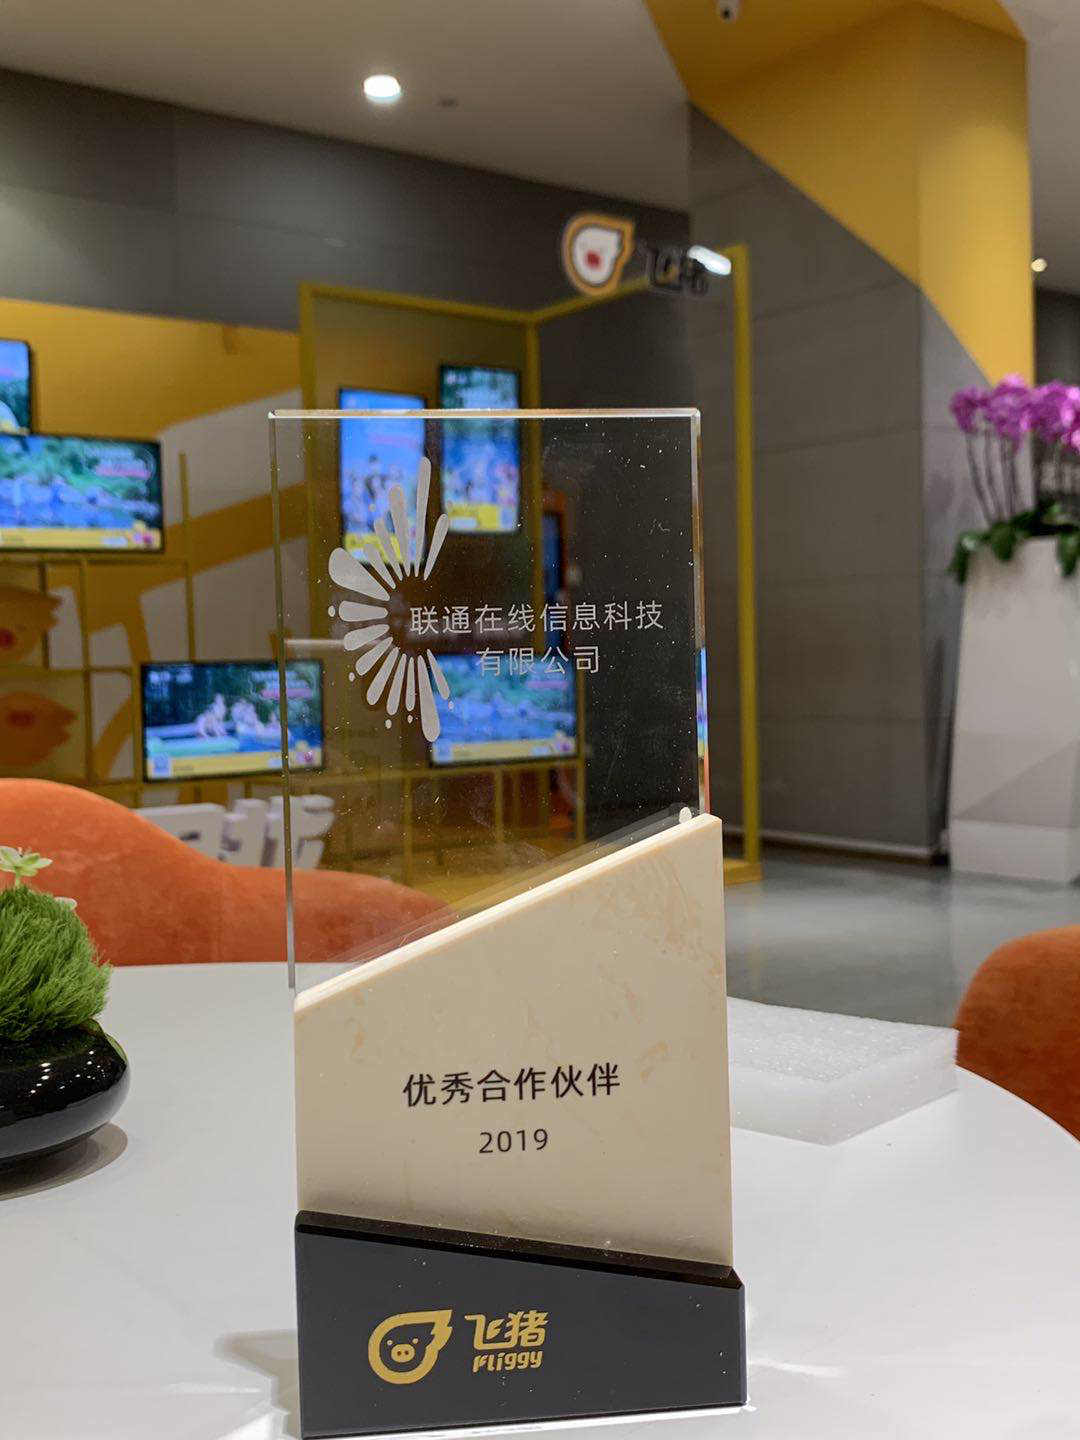  北京联通在线通讯旗舰店喜获2019年度境外游优秀合作伙伴荣誉